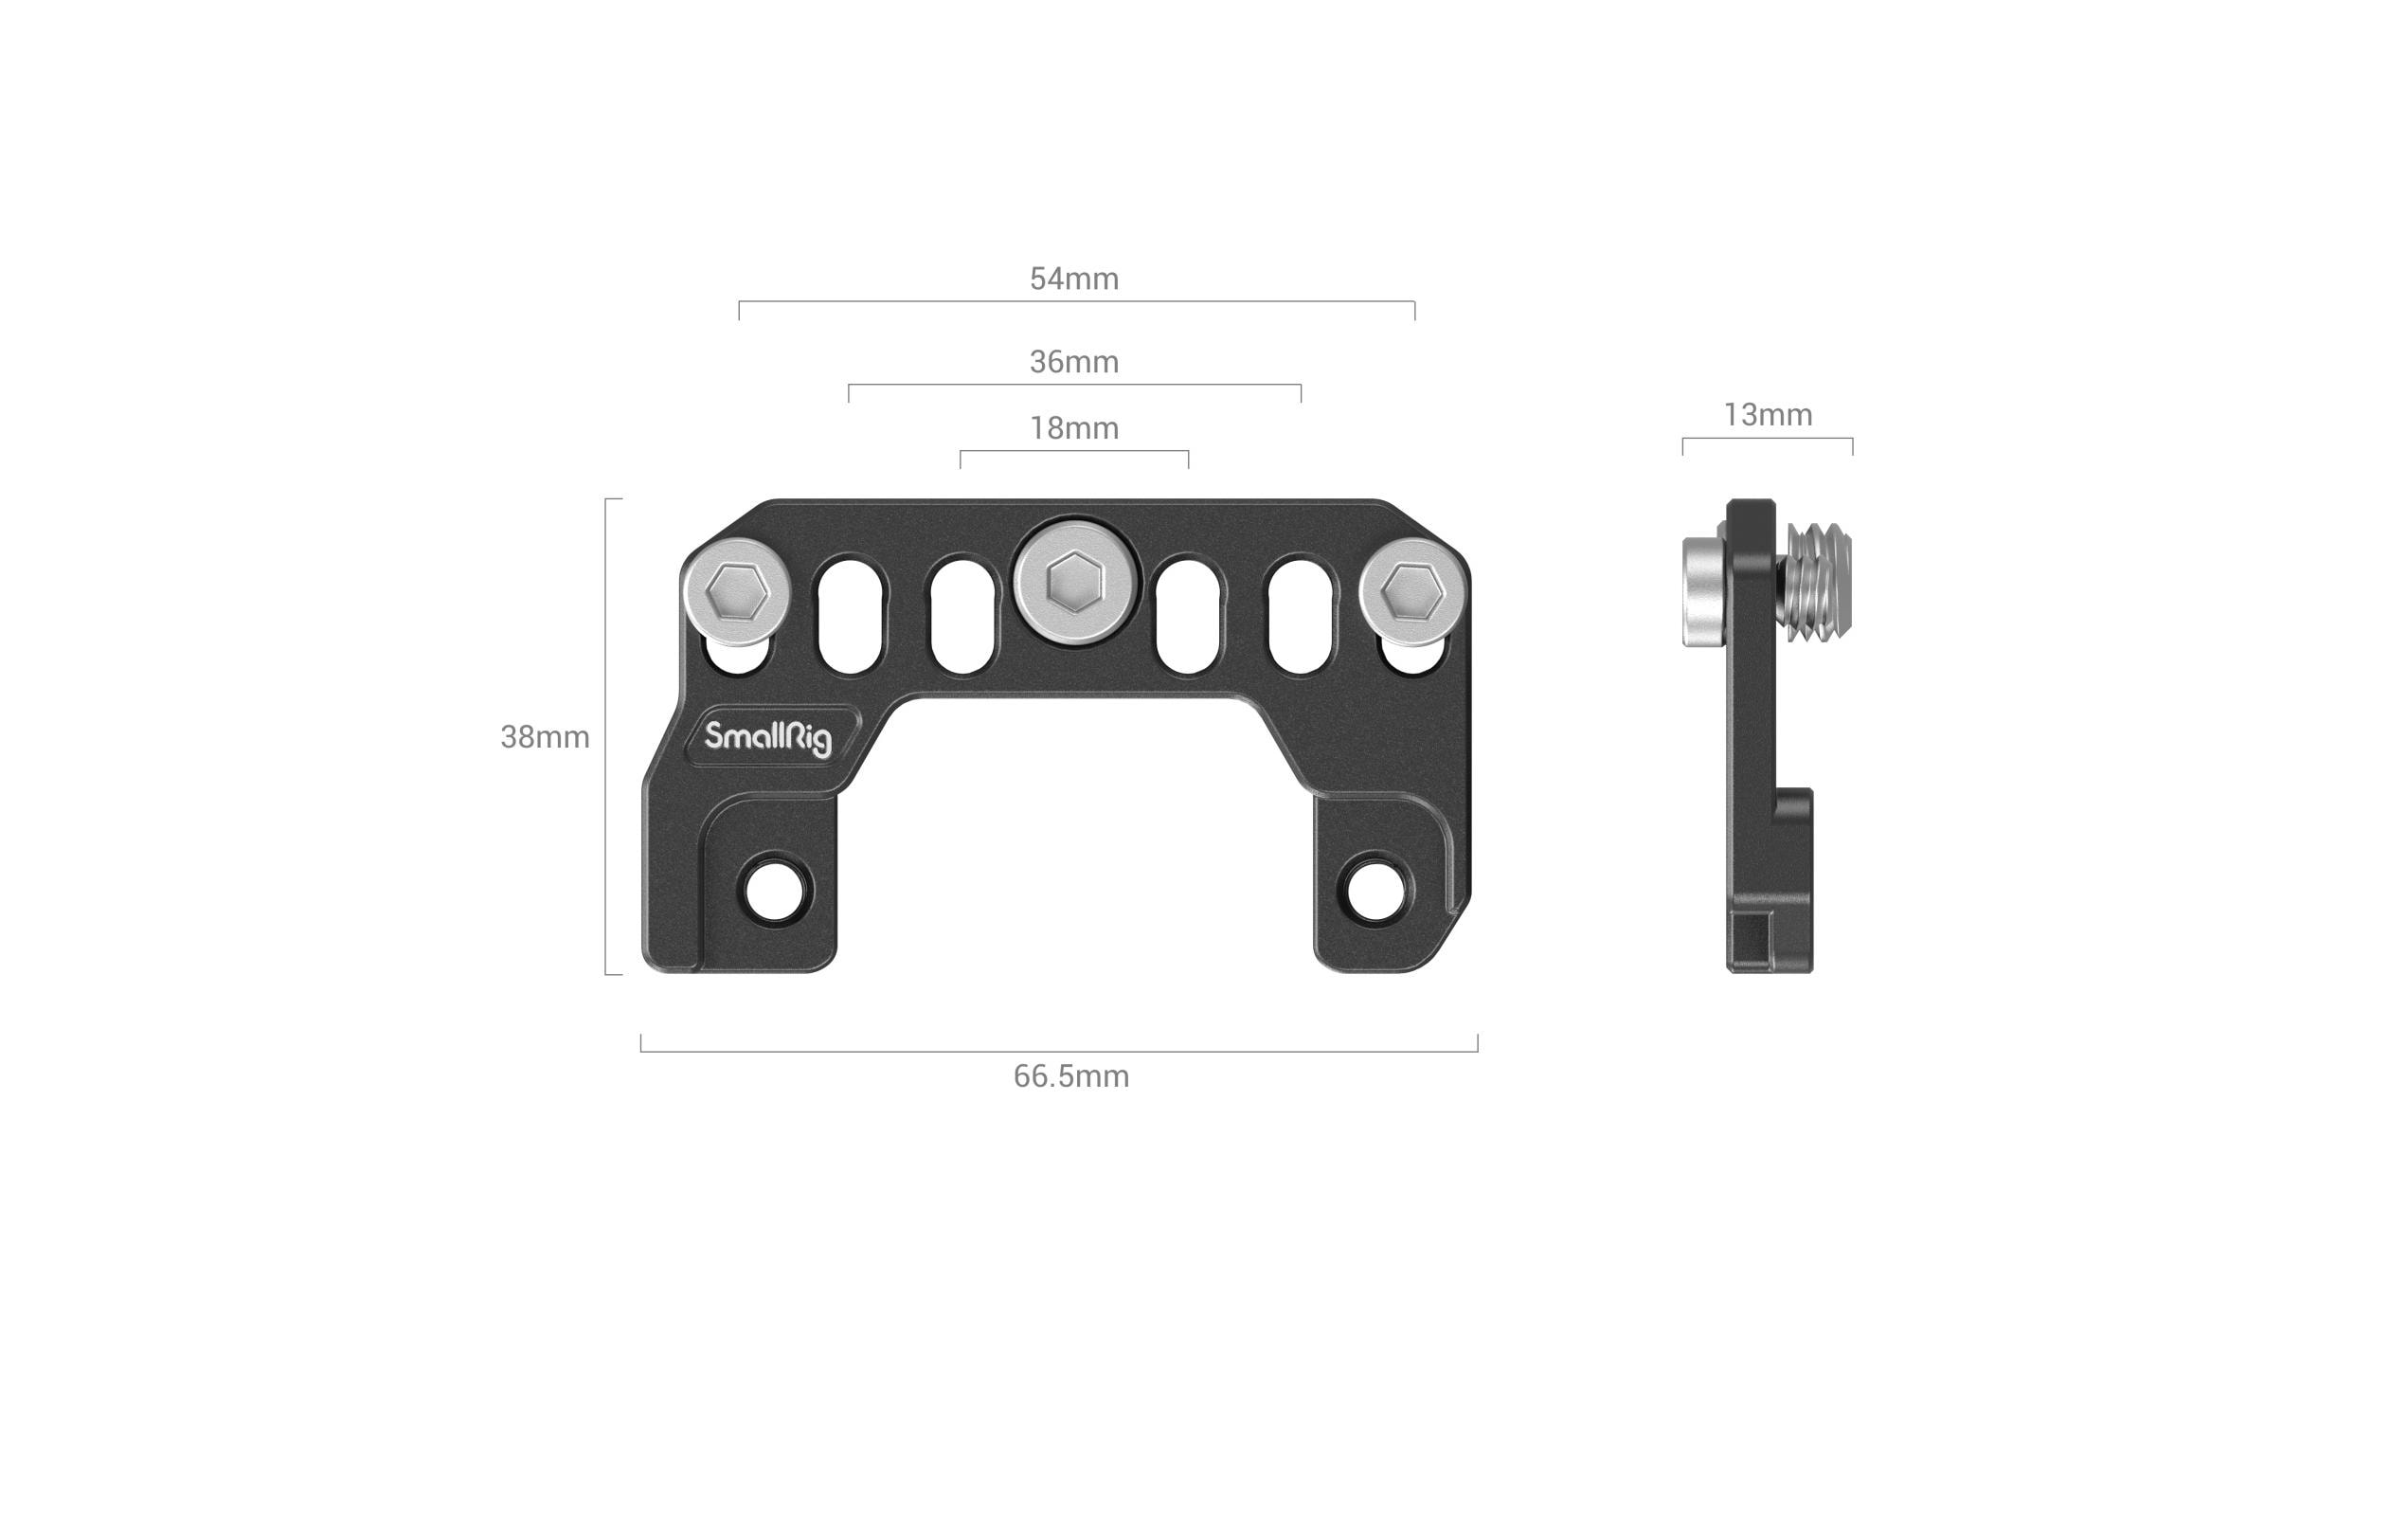 Smallrig Adapter Plate für Sony FX3 XLR Handle